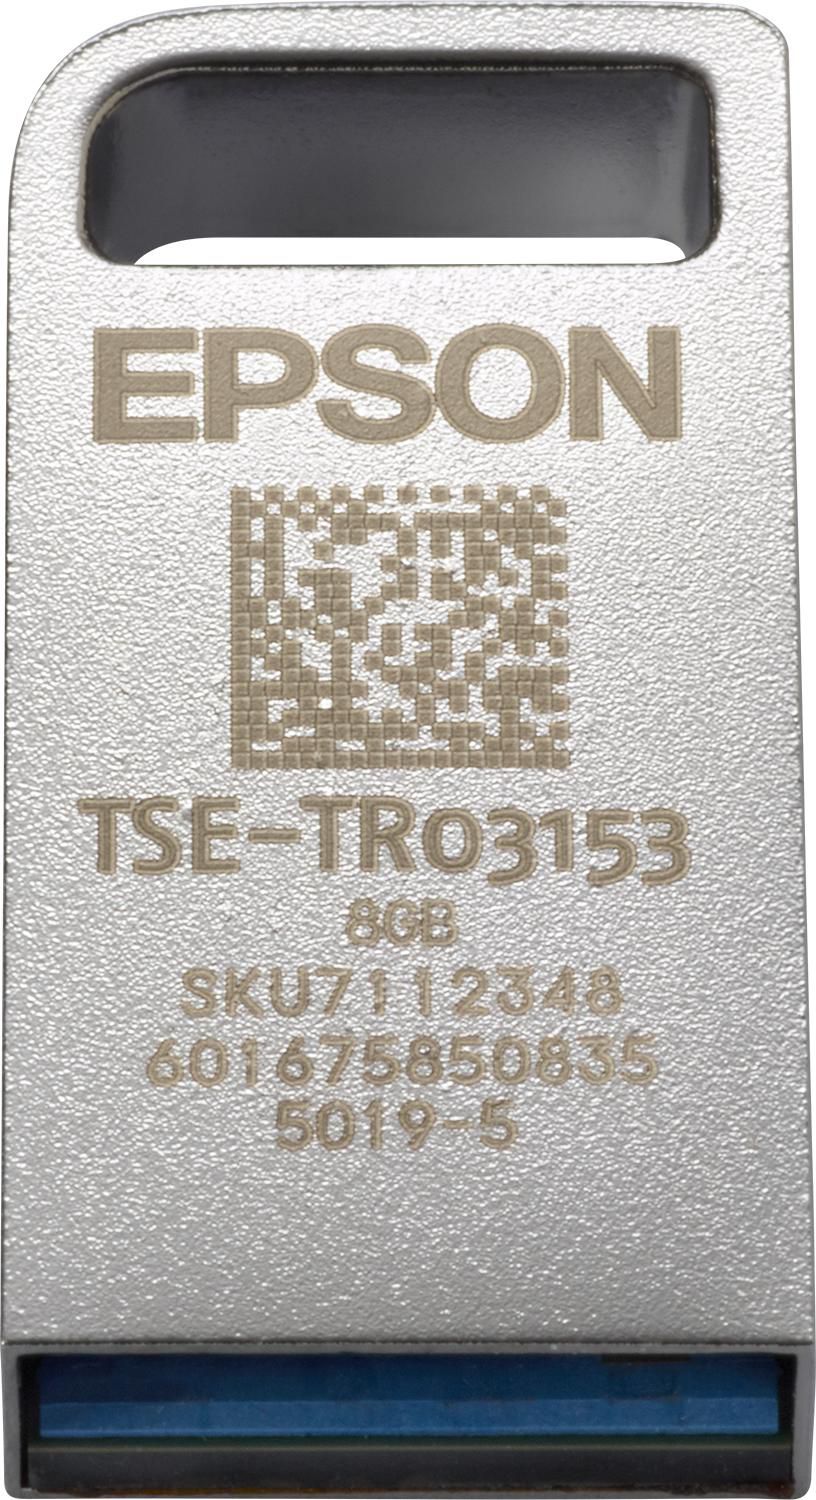 EPSON TSE, USB - Technische Sicherungseinrichtung (TSE-Modul) - Bauform: Nano-USB-Stick